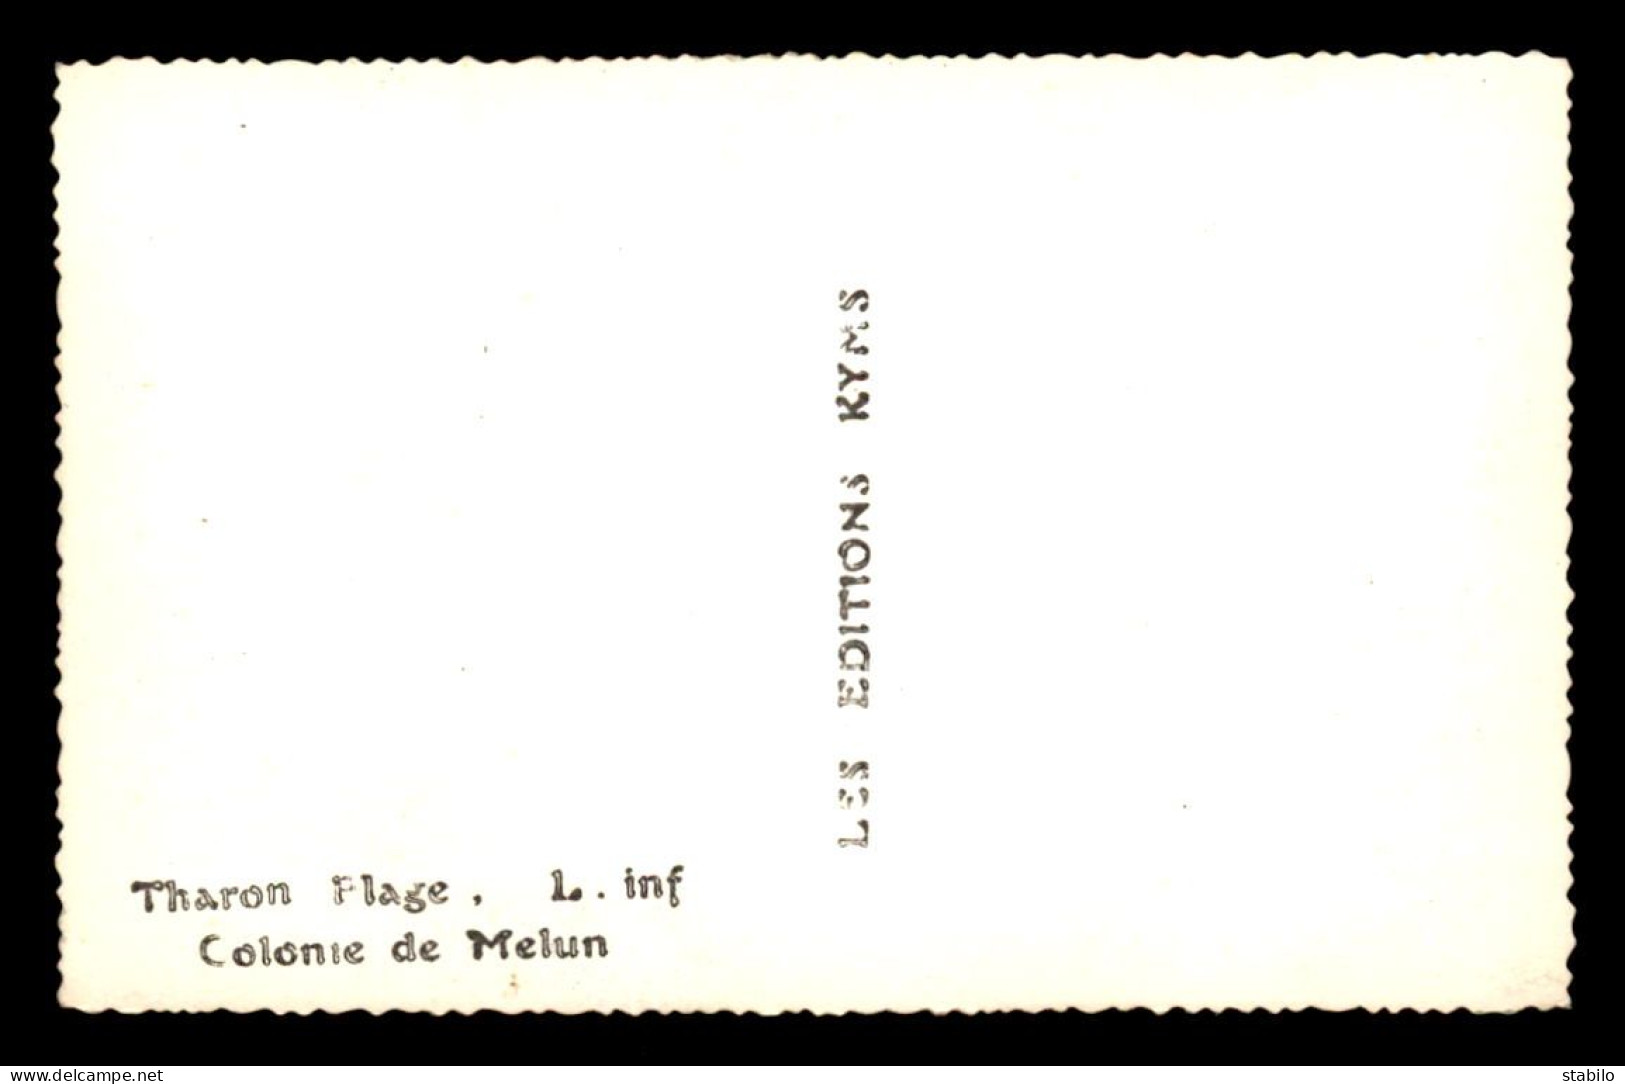 44 - THARON-PLAGE - COLONIE DE MELUN (SEINE-ET-MARNE) - Tharon-Plage